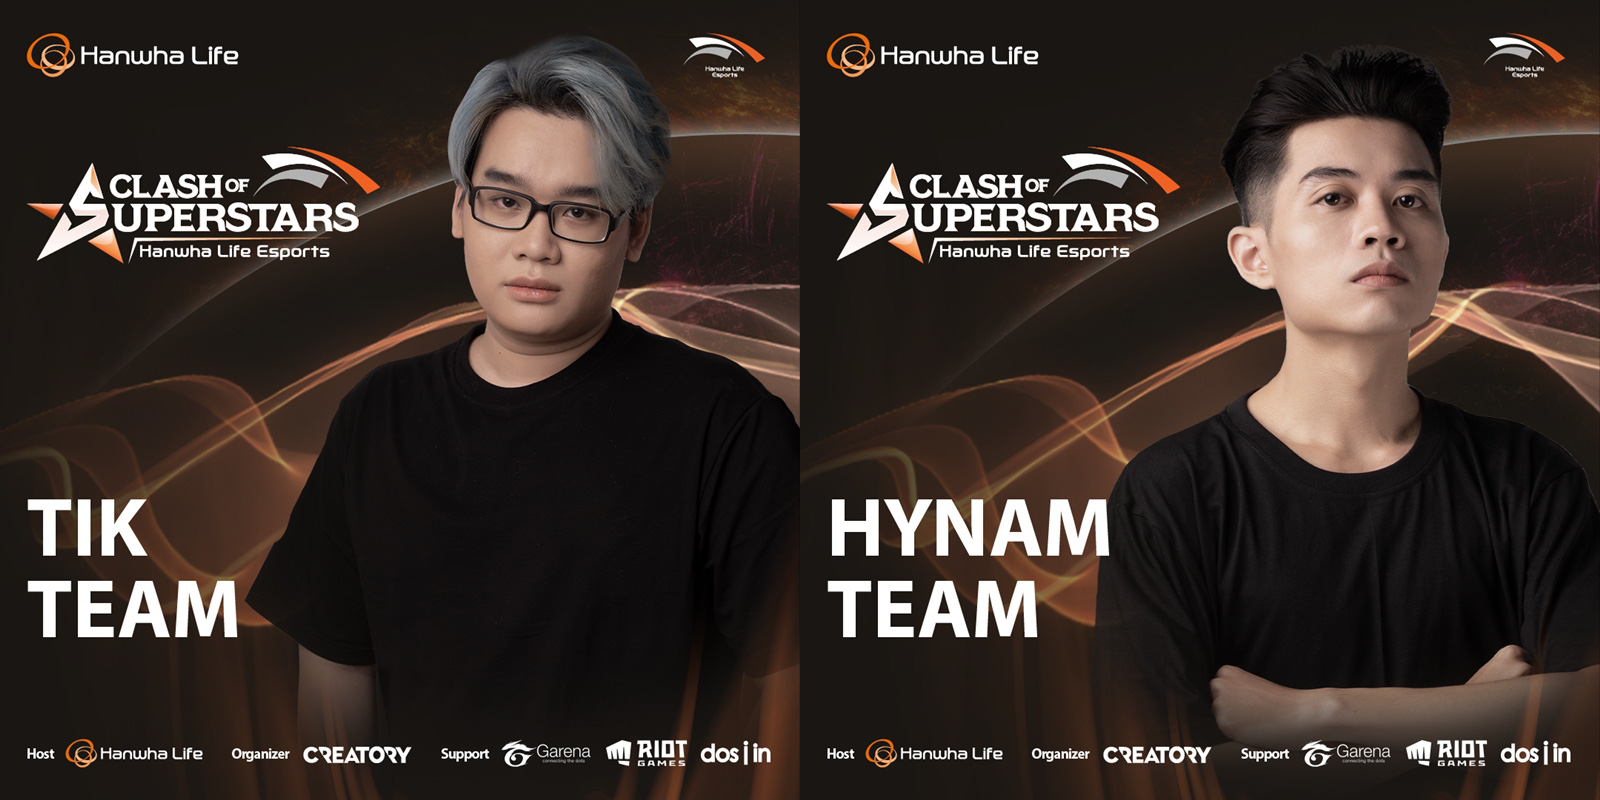 Chung kết Hanwha Life Esports: Team HyNam “đụng độ” Team TikTik Sama, ai sẽ là người “tỏa sáng”? - Ảnh 1.